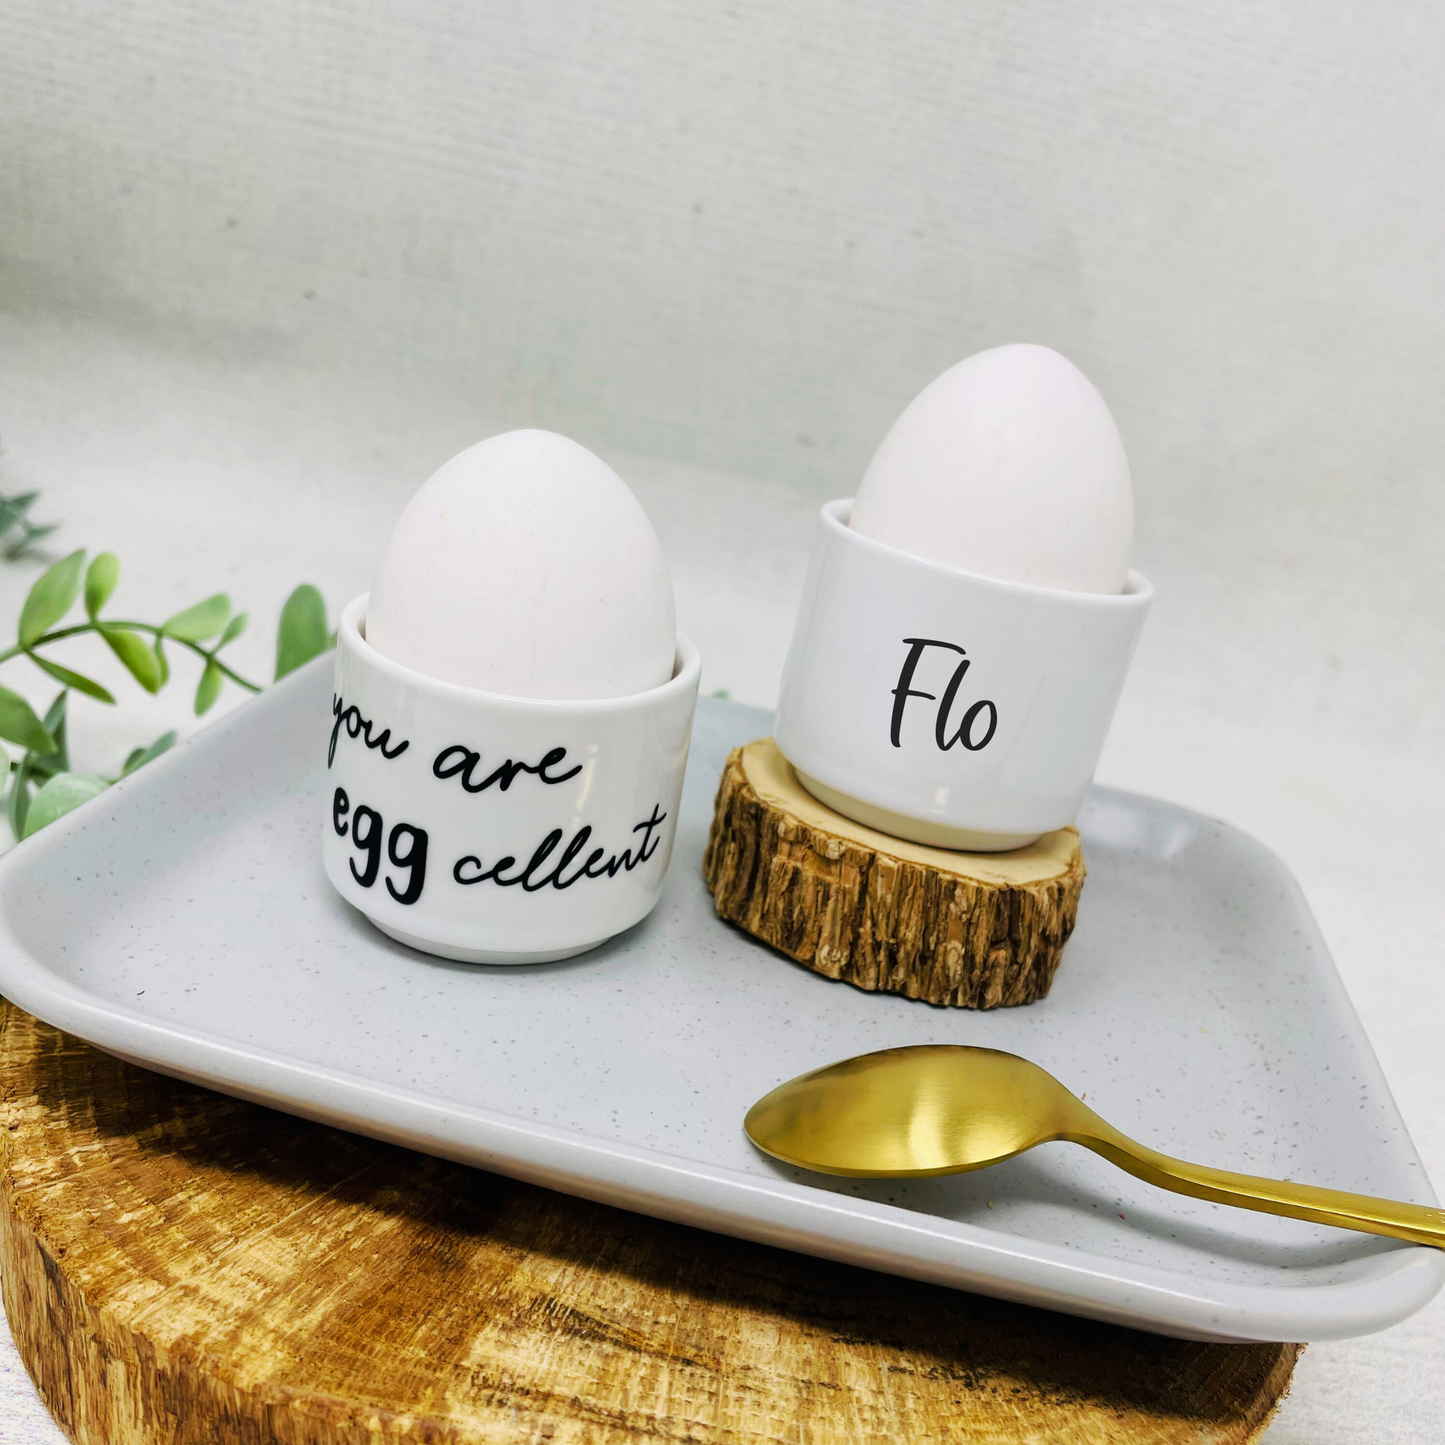 Personalisierter Eierbecher mit Name - Geschenk Ostern - Einzug - Geburtstag - Geschenkidee individuell - you are eggcellent - Ei feel good